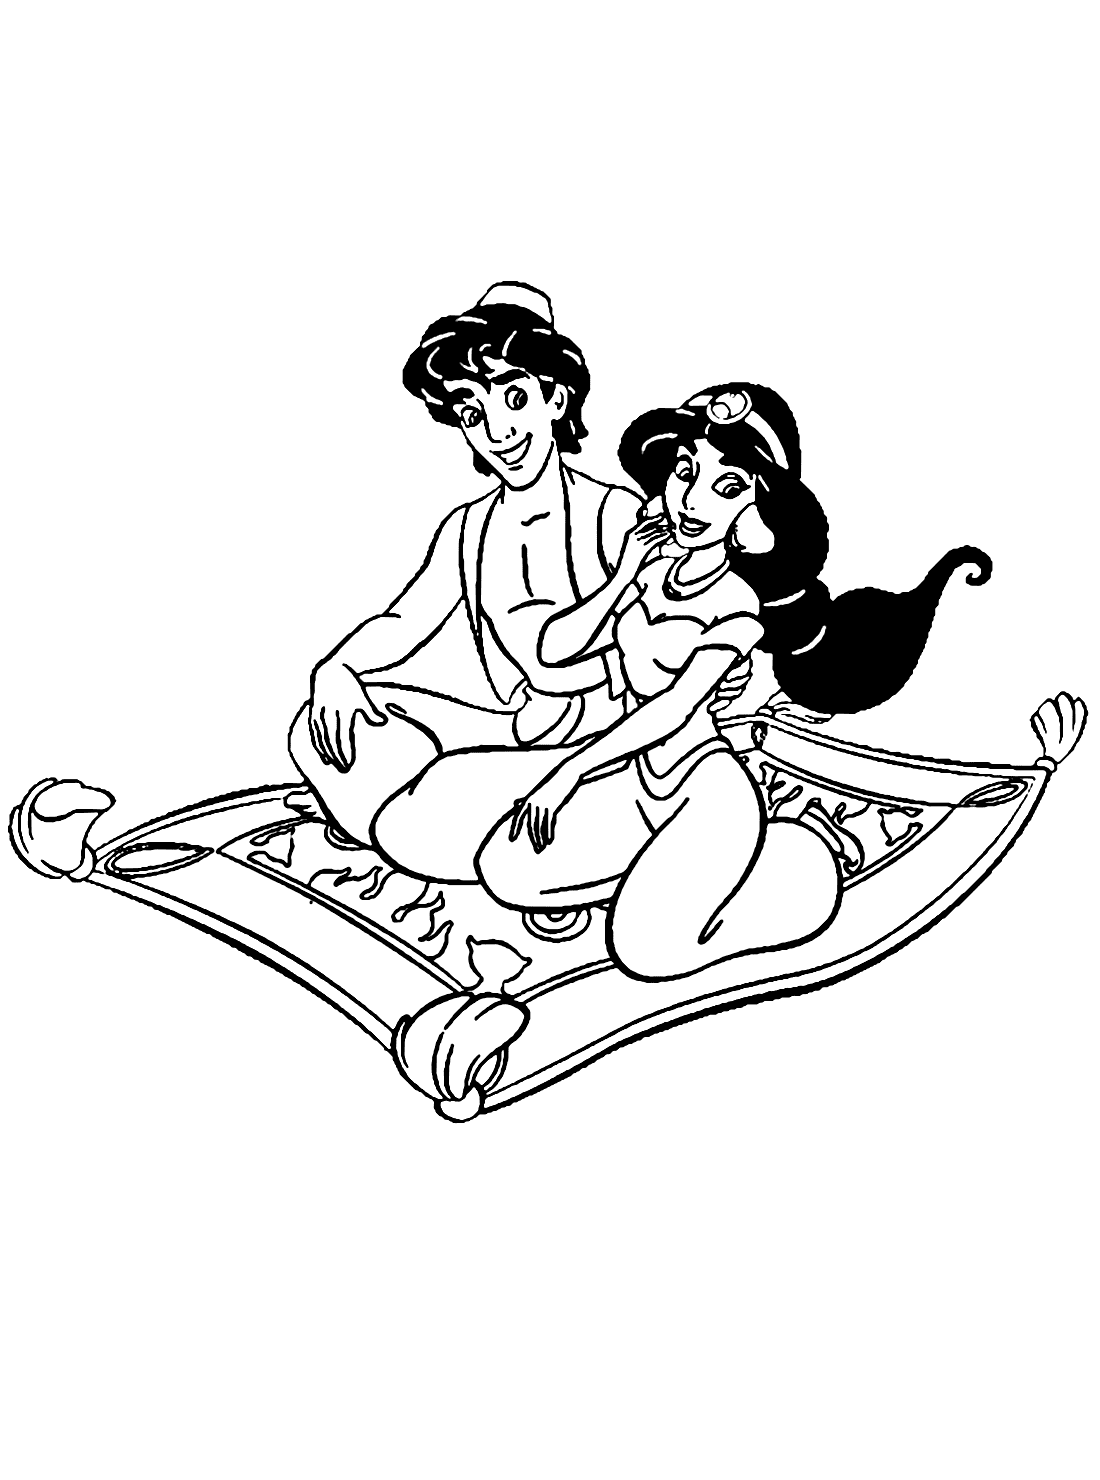 Jasmine And Aladdin Together